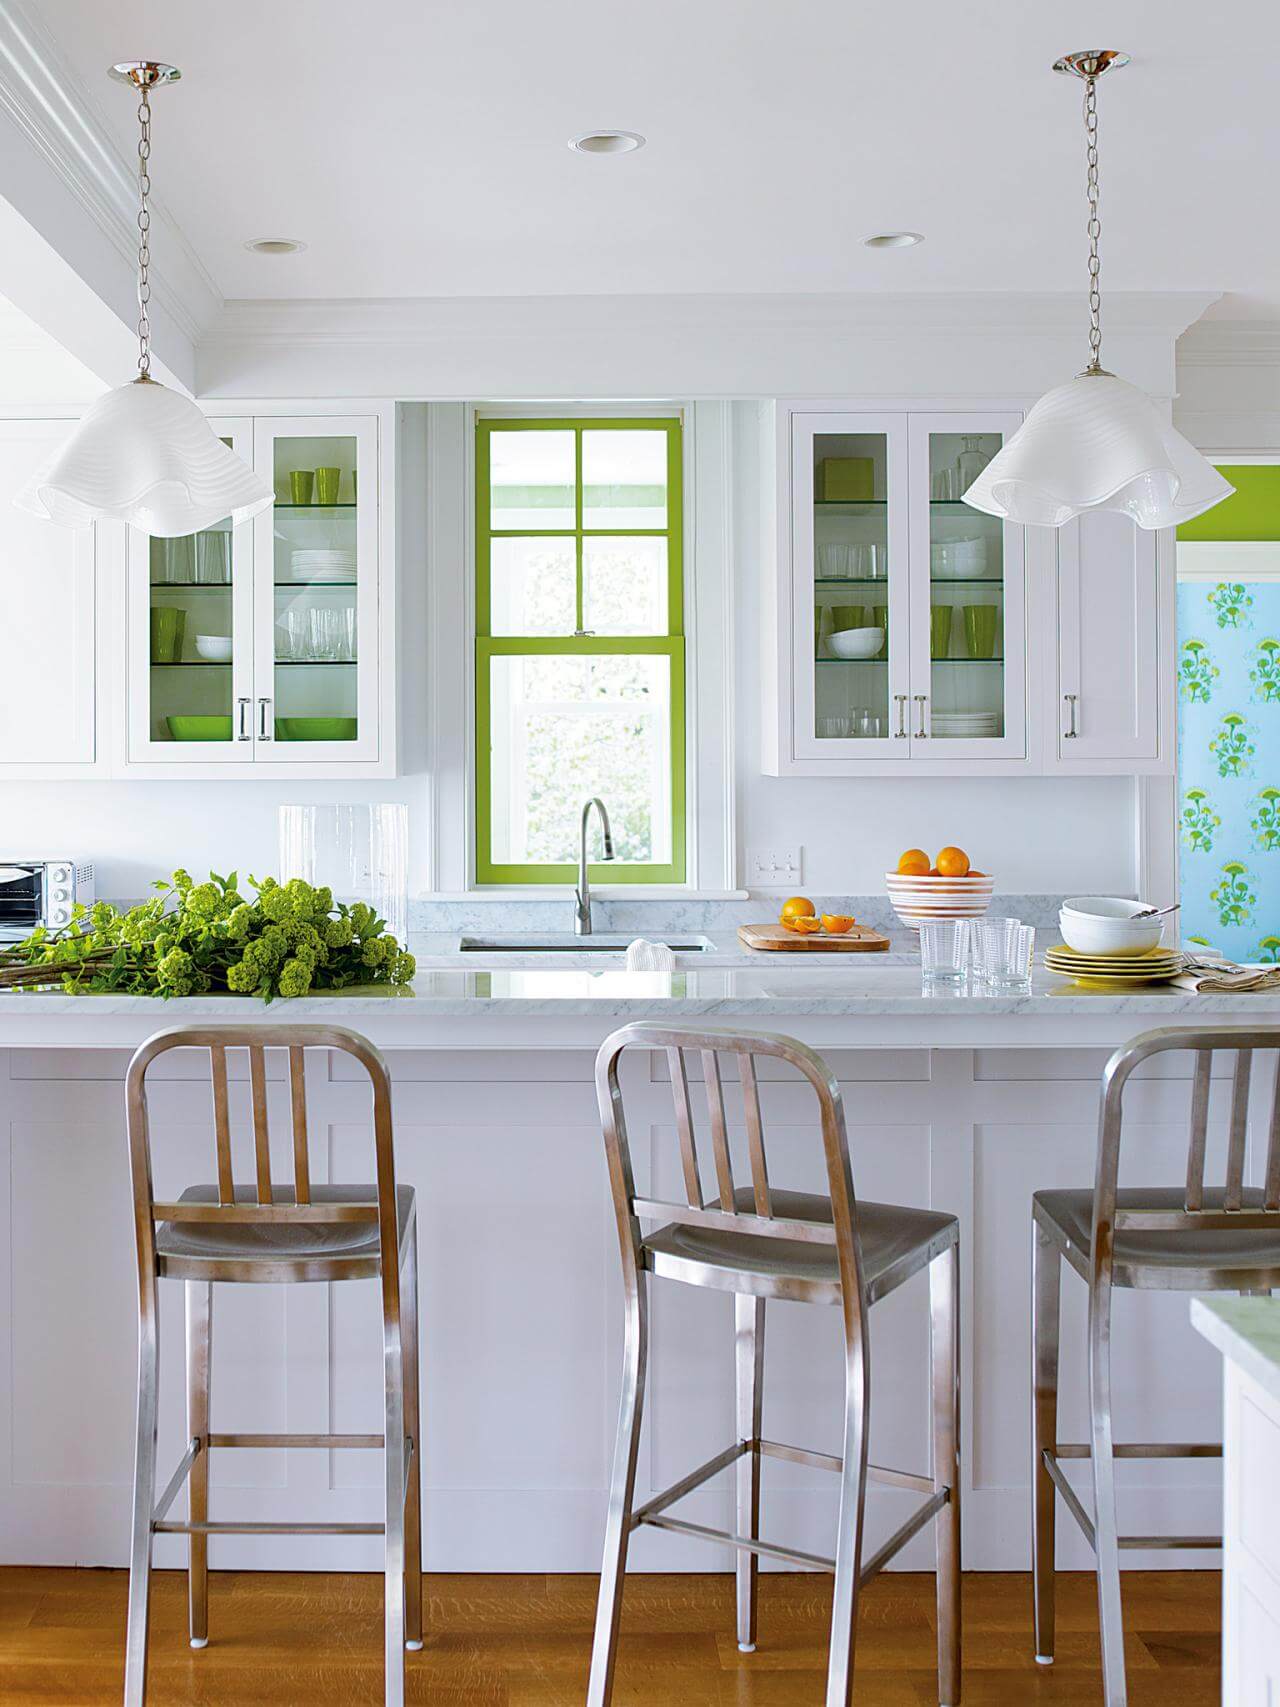 Sơn phòng bếp đẹp, không cầu kỳ tạo những bảng màu lớn hay nhiều bảng màu, kết hợp màu xanh khung cửa, chi tiết nhỏ nhưng đủ tạo cá tính cho phòng bếp.